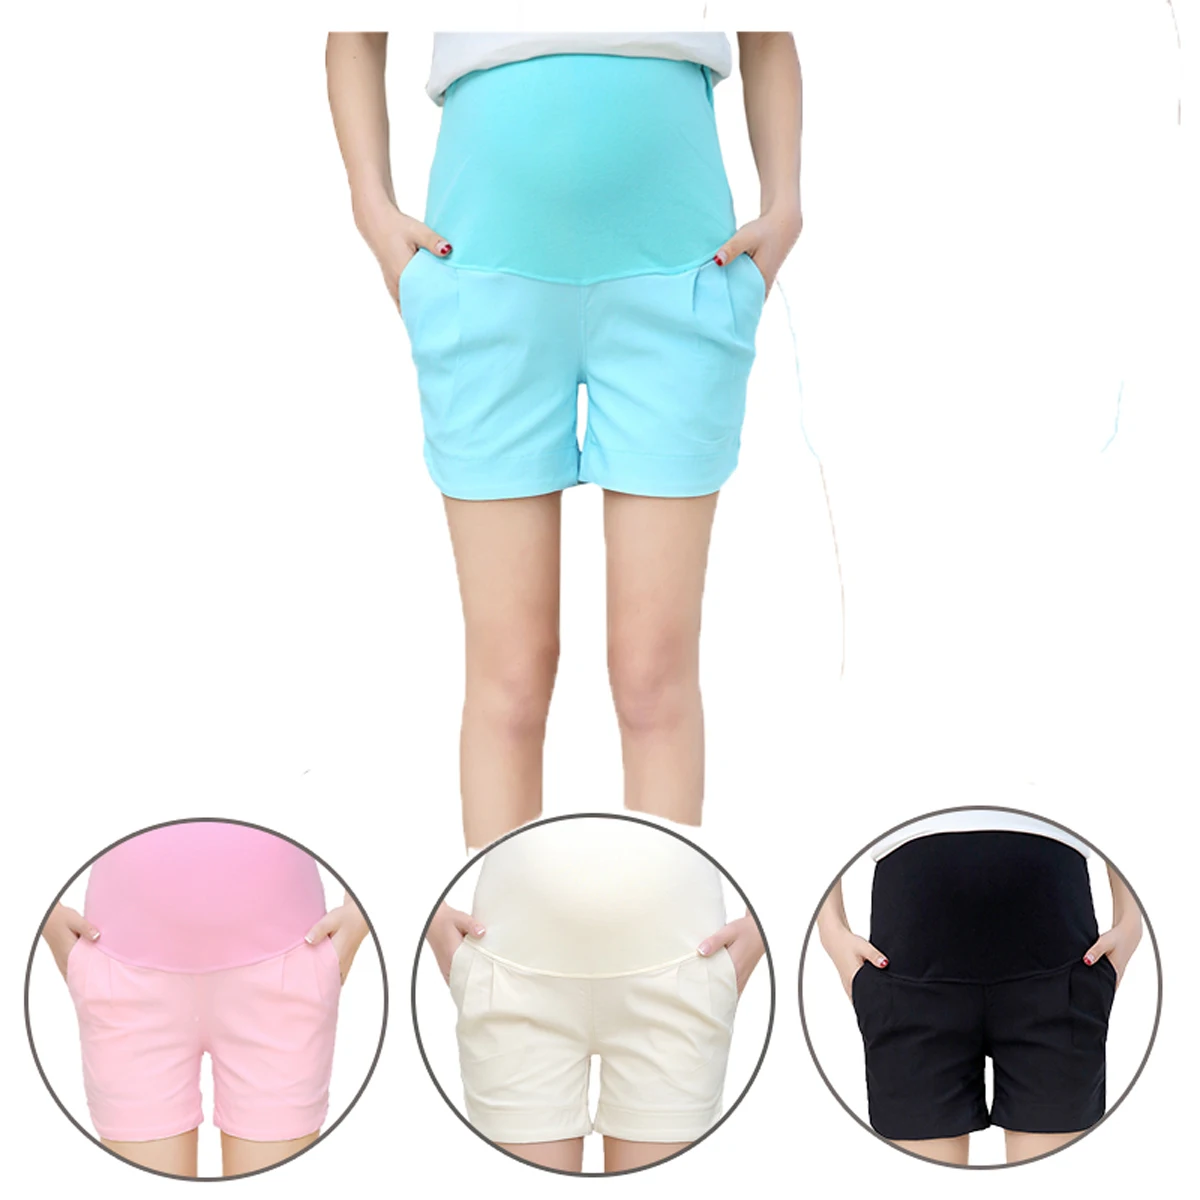 Хлопковые шорты для беременных летние штаны для беременных женщин одежда больших размеров Одежда для беременных шорты Узкие хлопковые шор...